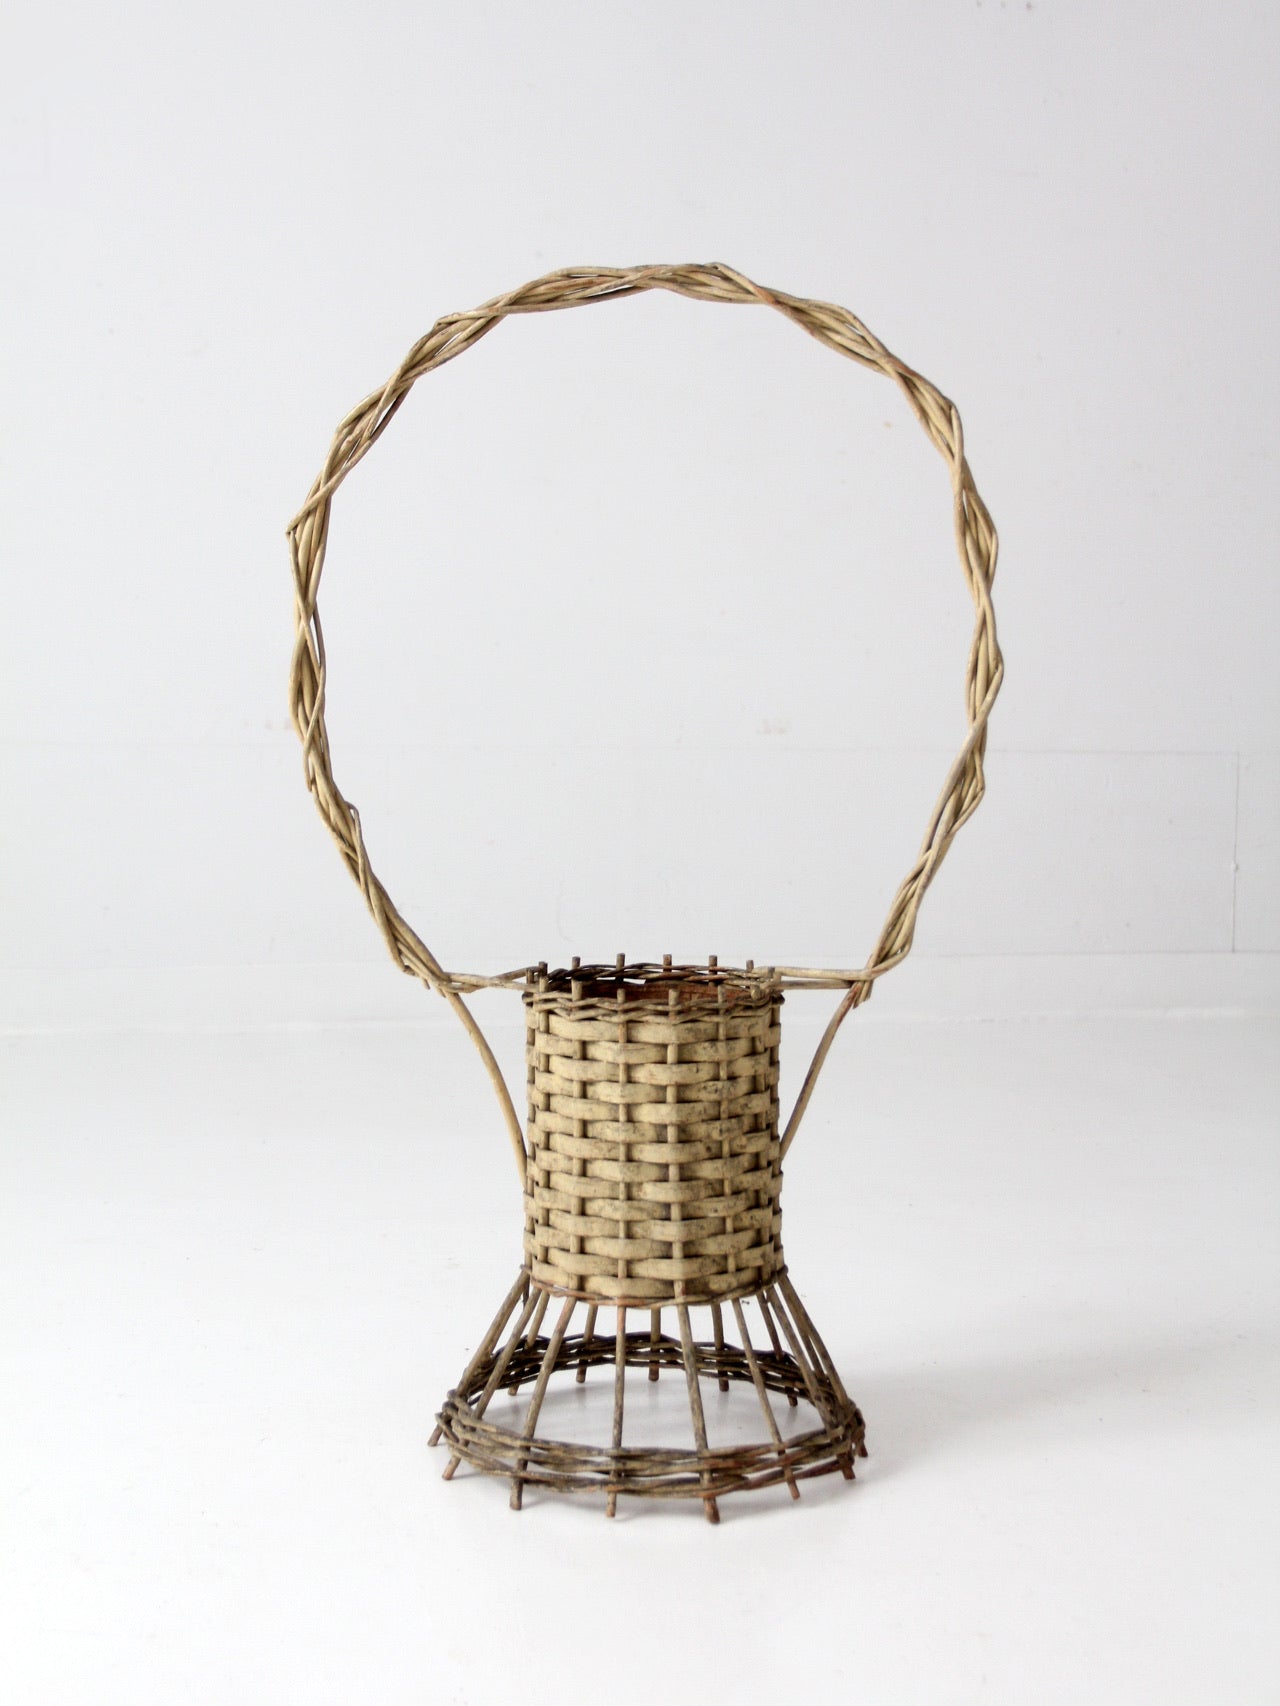 Victorian flower display basket